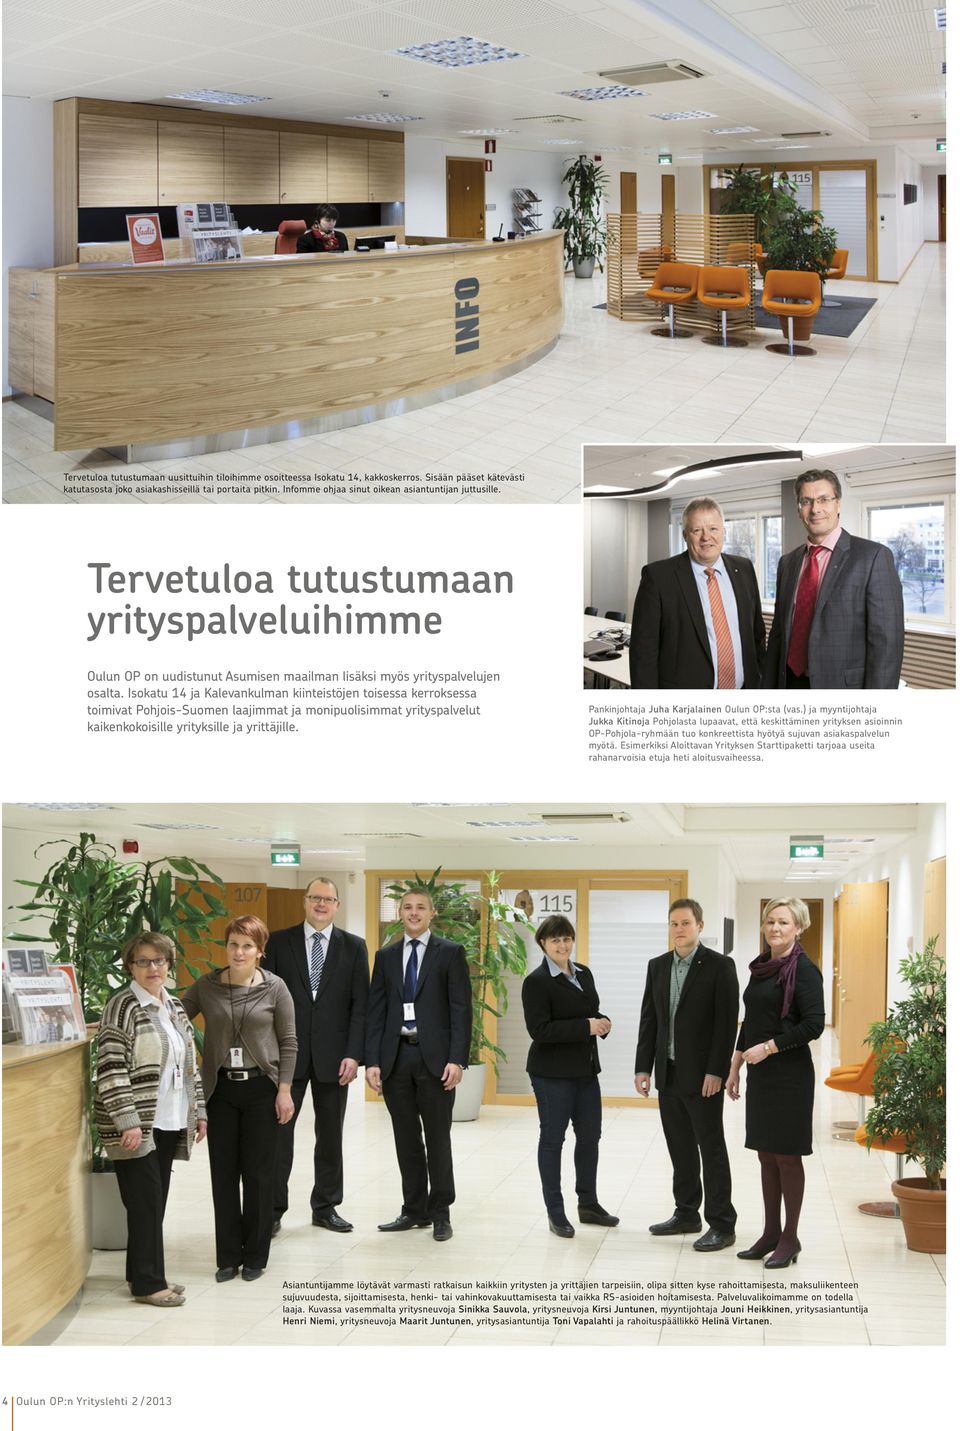 Isokatu 14 ja Kalevankulman kiinteistöjen toisessa kerroksessa toimivat Pohjois-Suomen laajimmat ja monipuolisimmat yrityspalvelut kaikenkokoisille yrityksille ja yrittäjille.